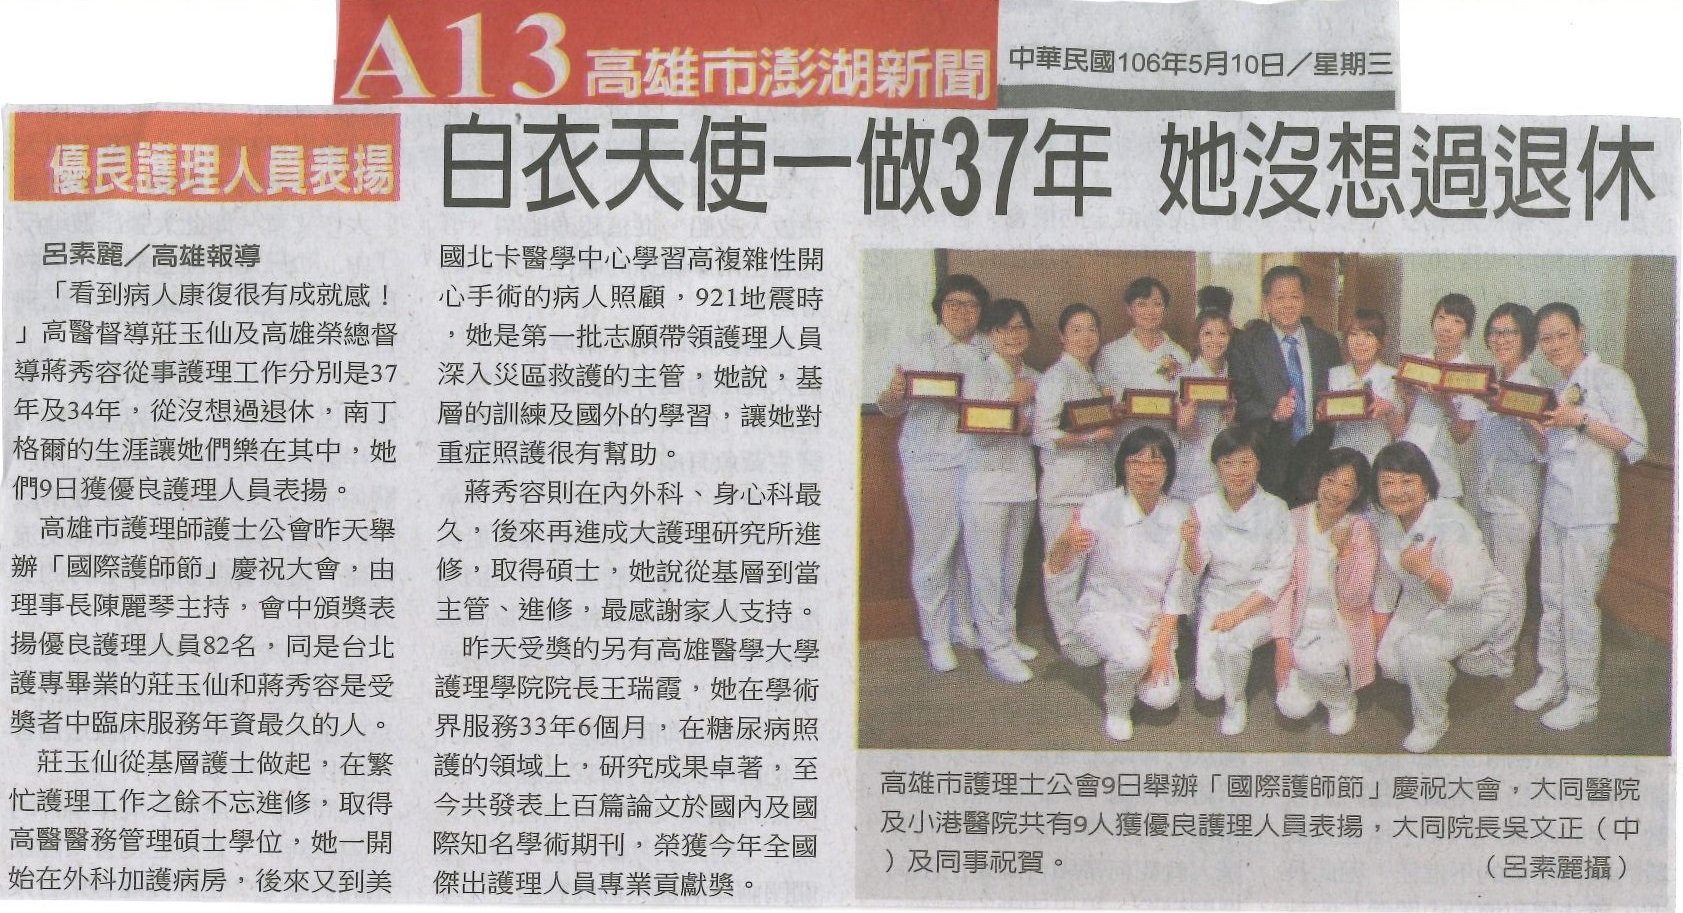 1060510優良護理人員表揚 白衣天使一做37年 她沒想過退休中國時報